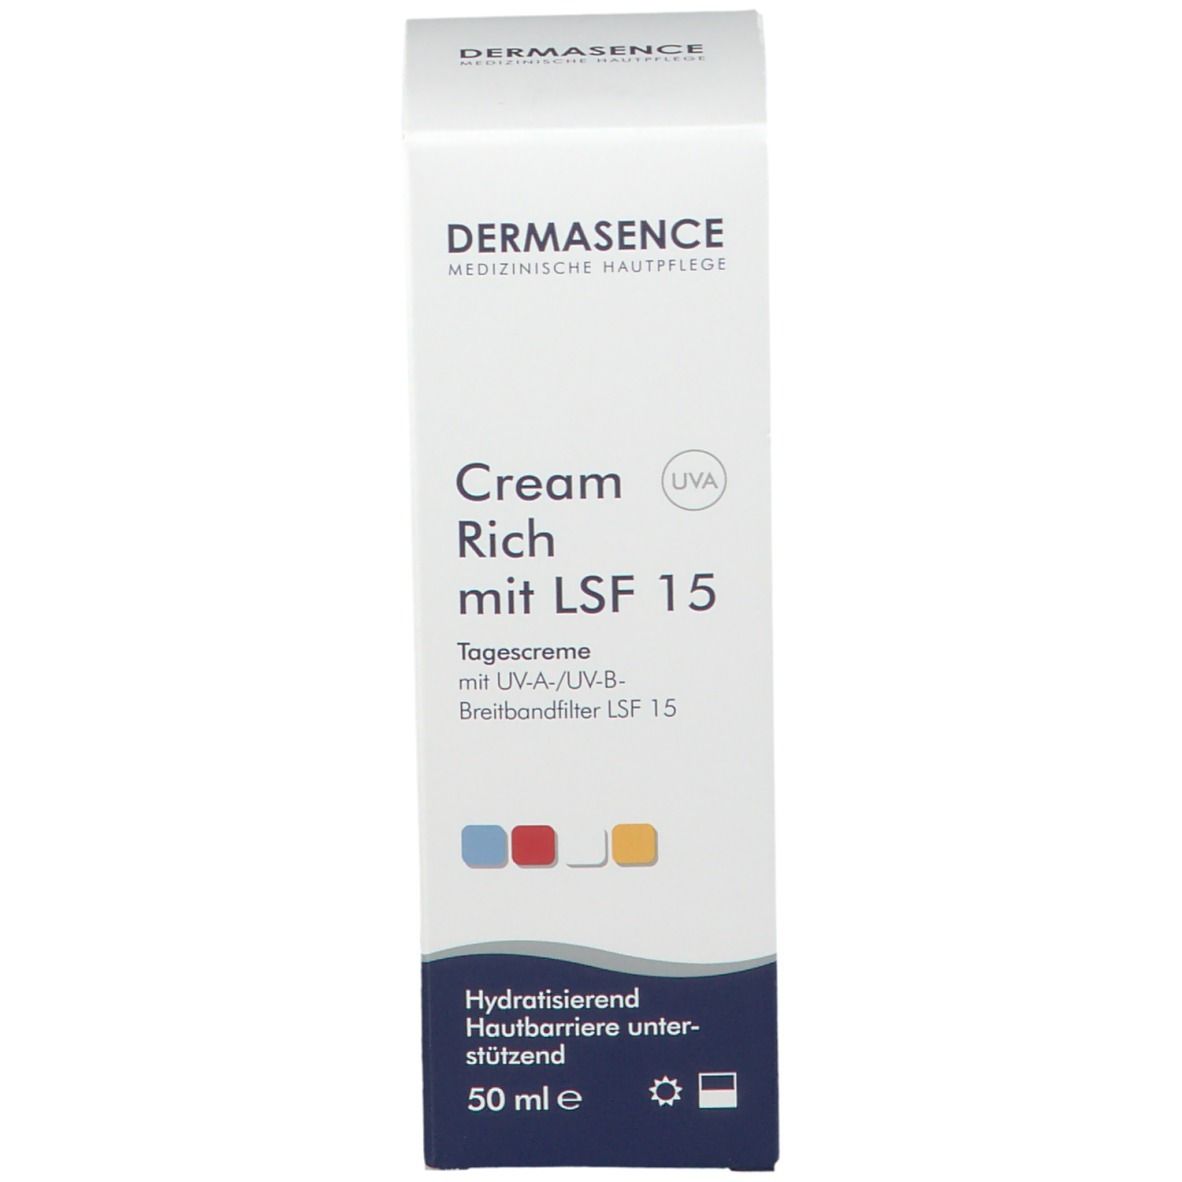 DERMASENCE Cream Rich mit LSF 15